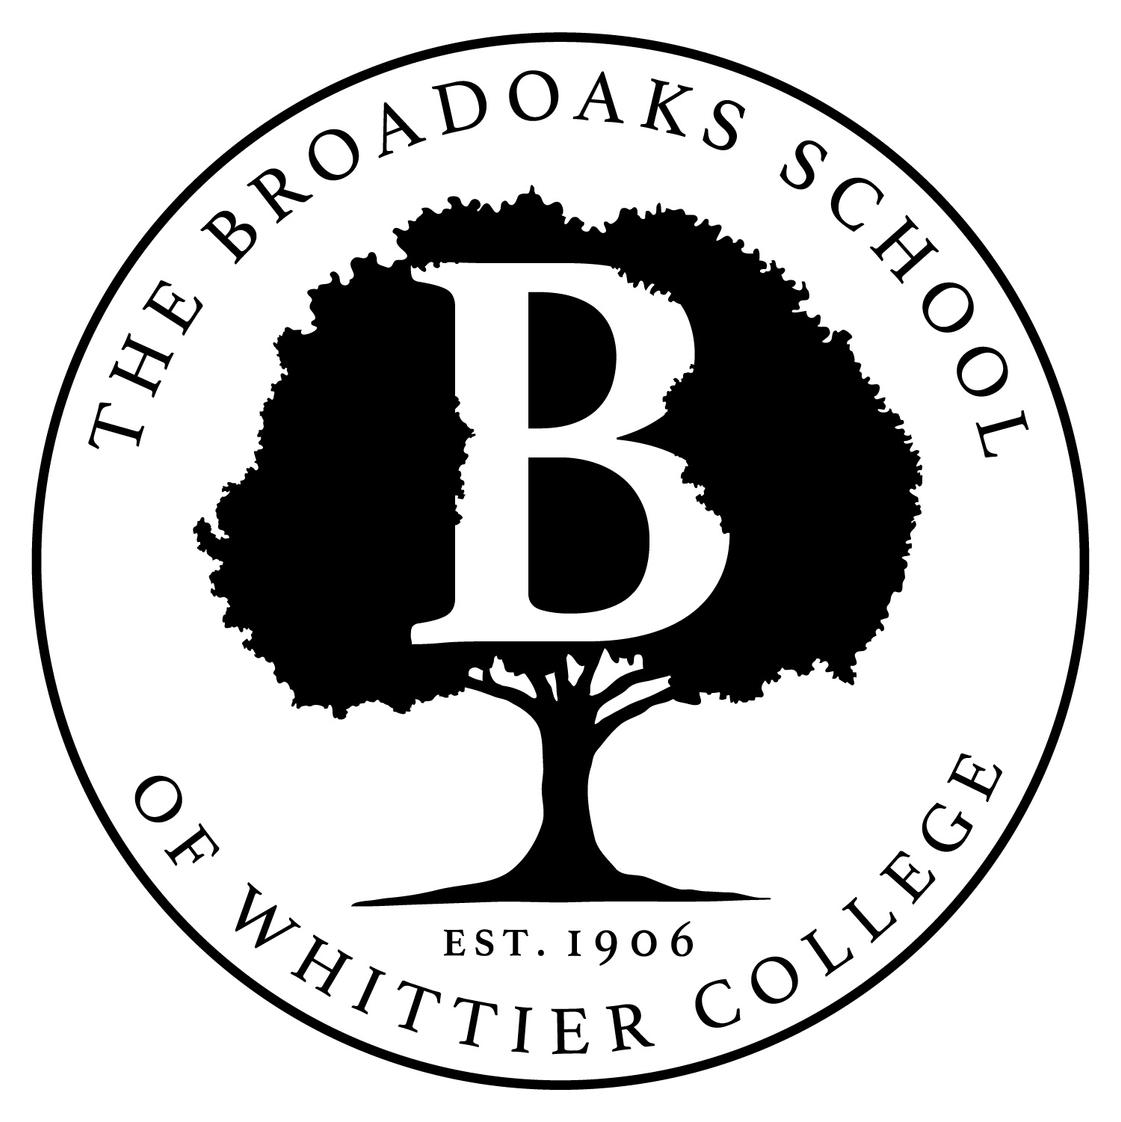 Broadoaks School Of Whittier College Photo #1